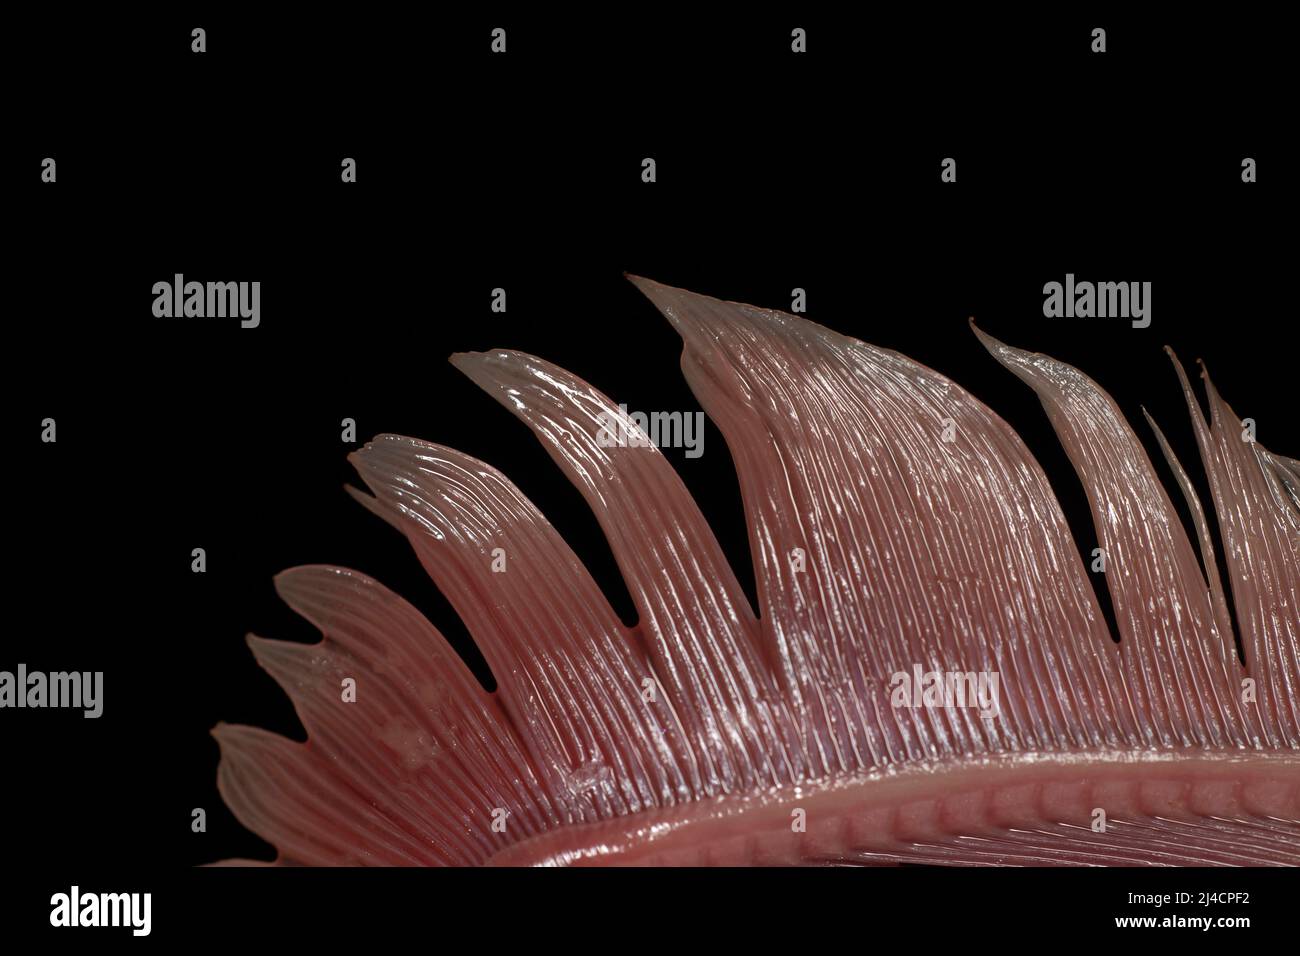 Die Kiemen einer Makrele (Scomber scombrus), Studiofotografie mit schwarzem Hintergrund Stock Photo